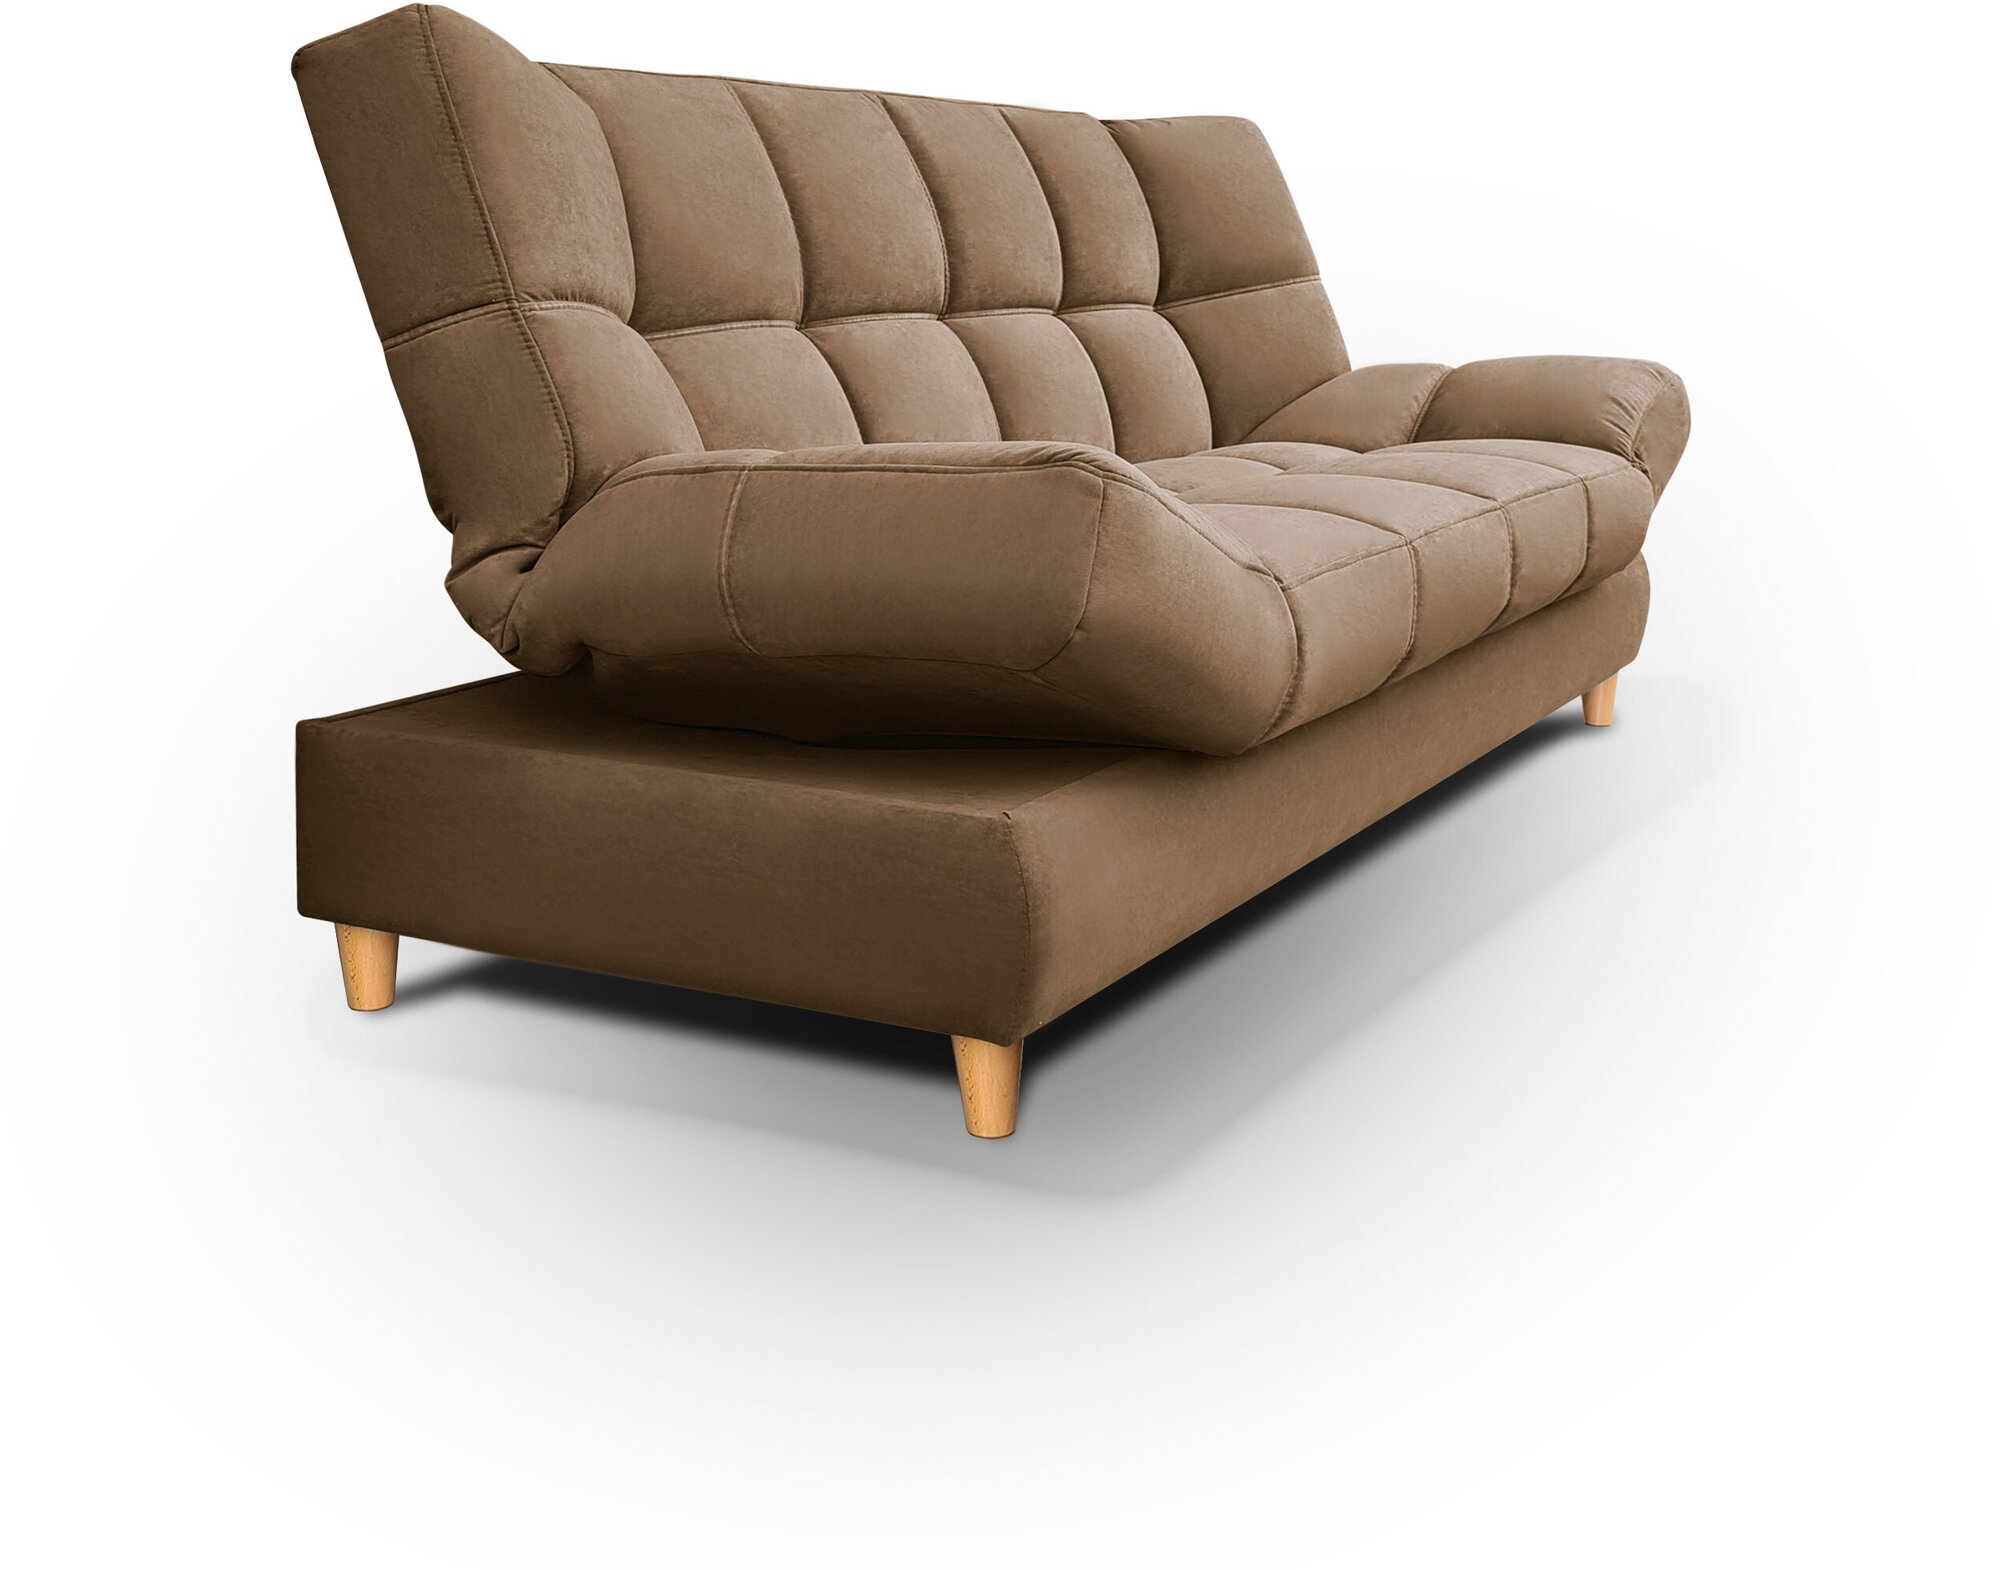 Саймон-прямой диван кровать Саймон ортопедический(коричневый)с ящиком для белья, без подлокотников, с пружинным блоком, механизм клик-кляк, 210х90х105см